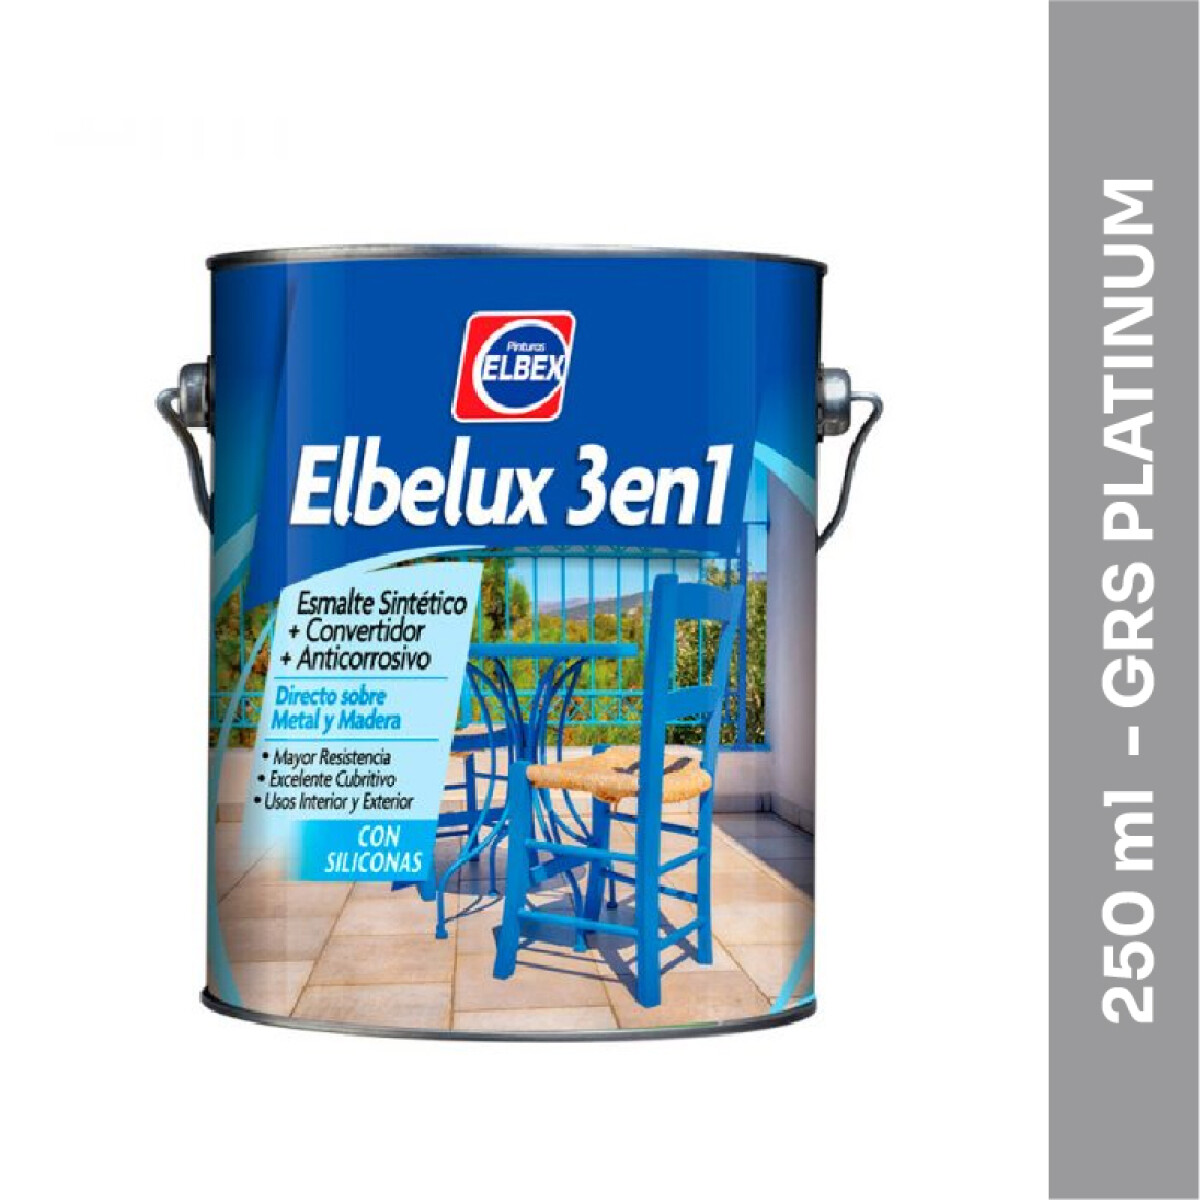 Esmalte Brillante Elbelux 3 en 1 - 250 ml - Gris Platinum 